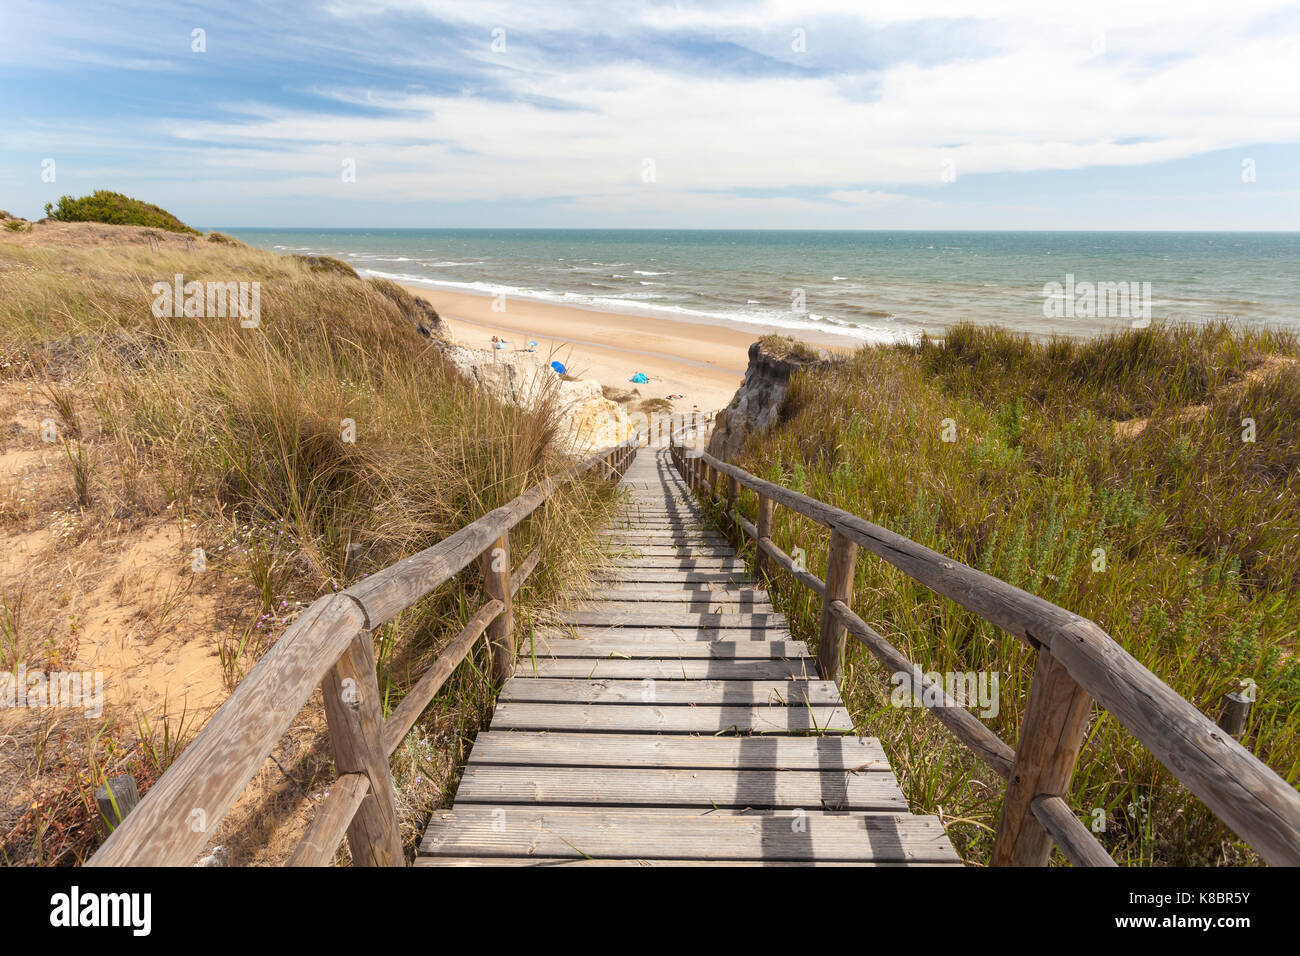 Escalier conduisant au playa del asperillo beach dans le parc naturel de Donana. matalascanas, province de Huelva, Costa de la luz, Andalousie, espagne Banque D'Images